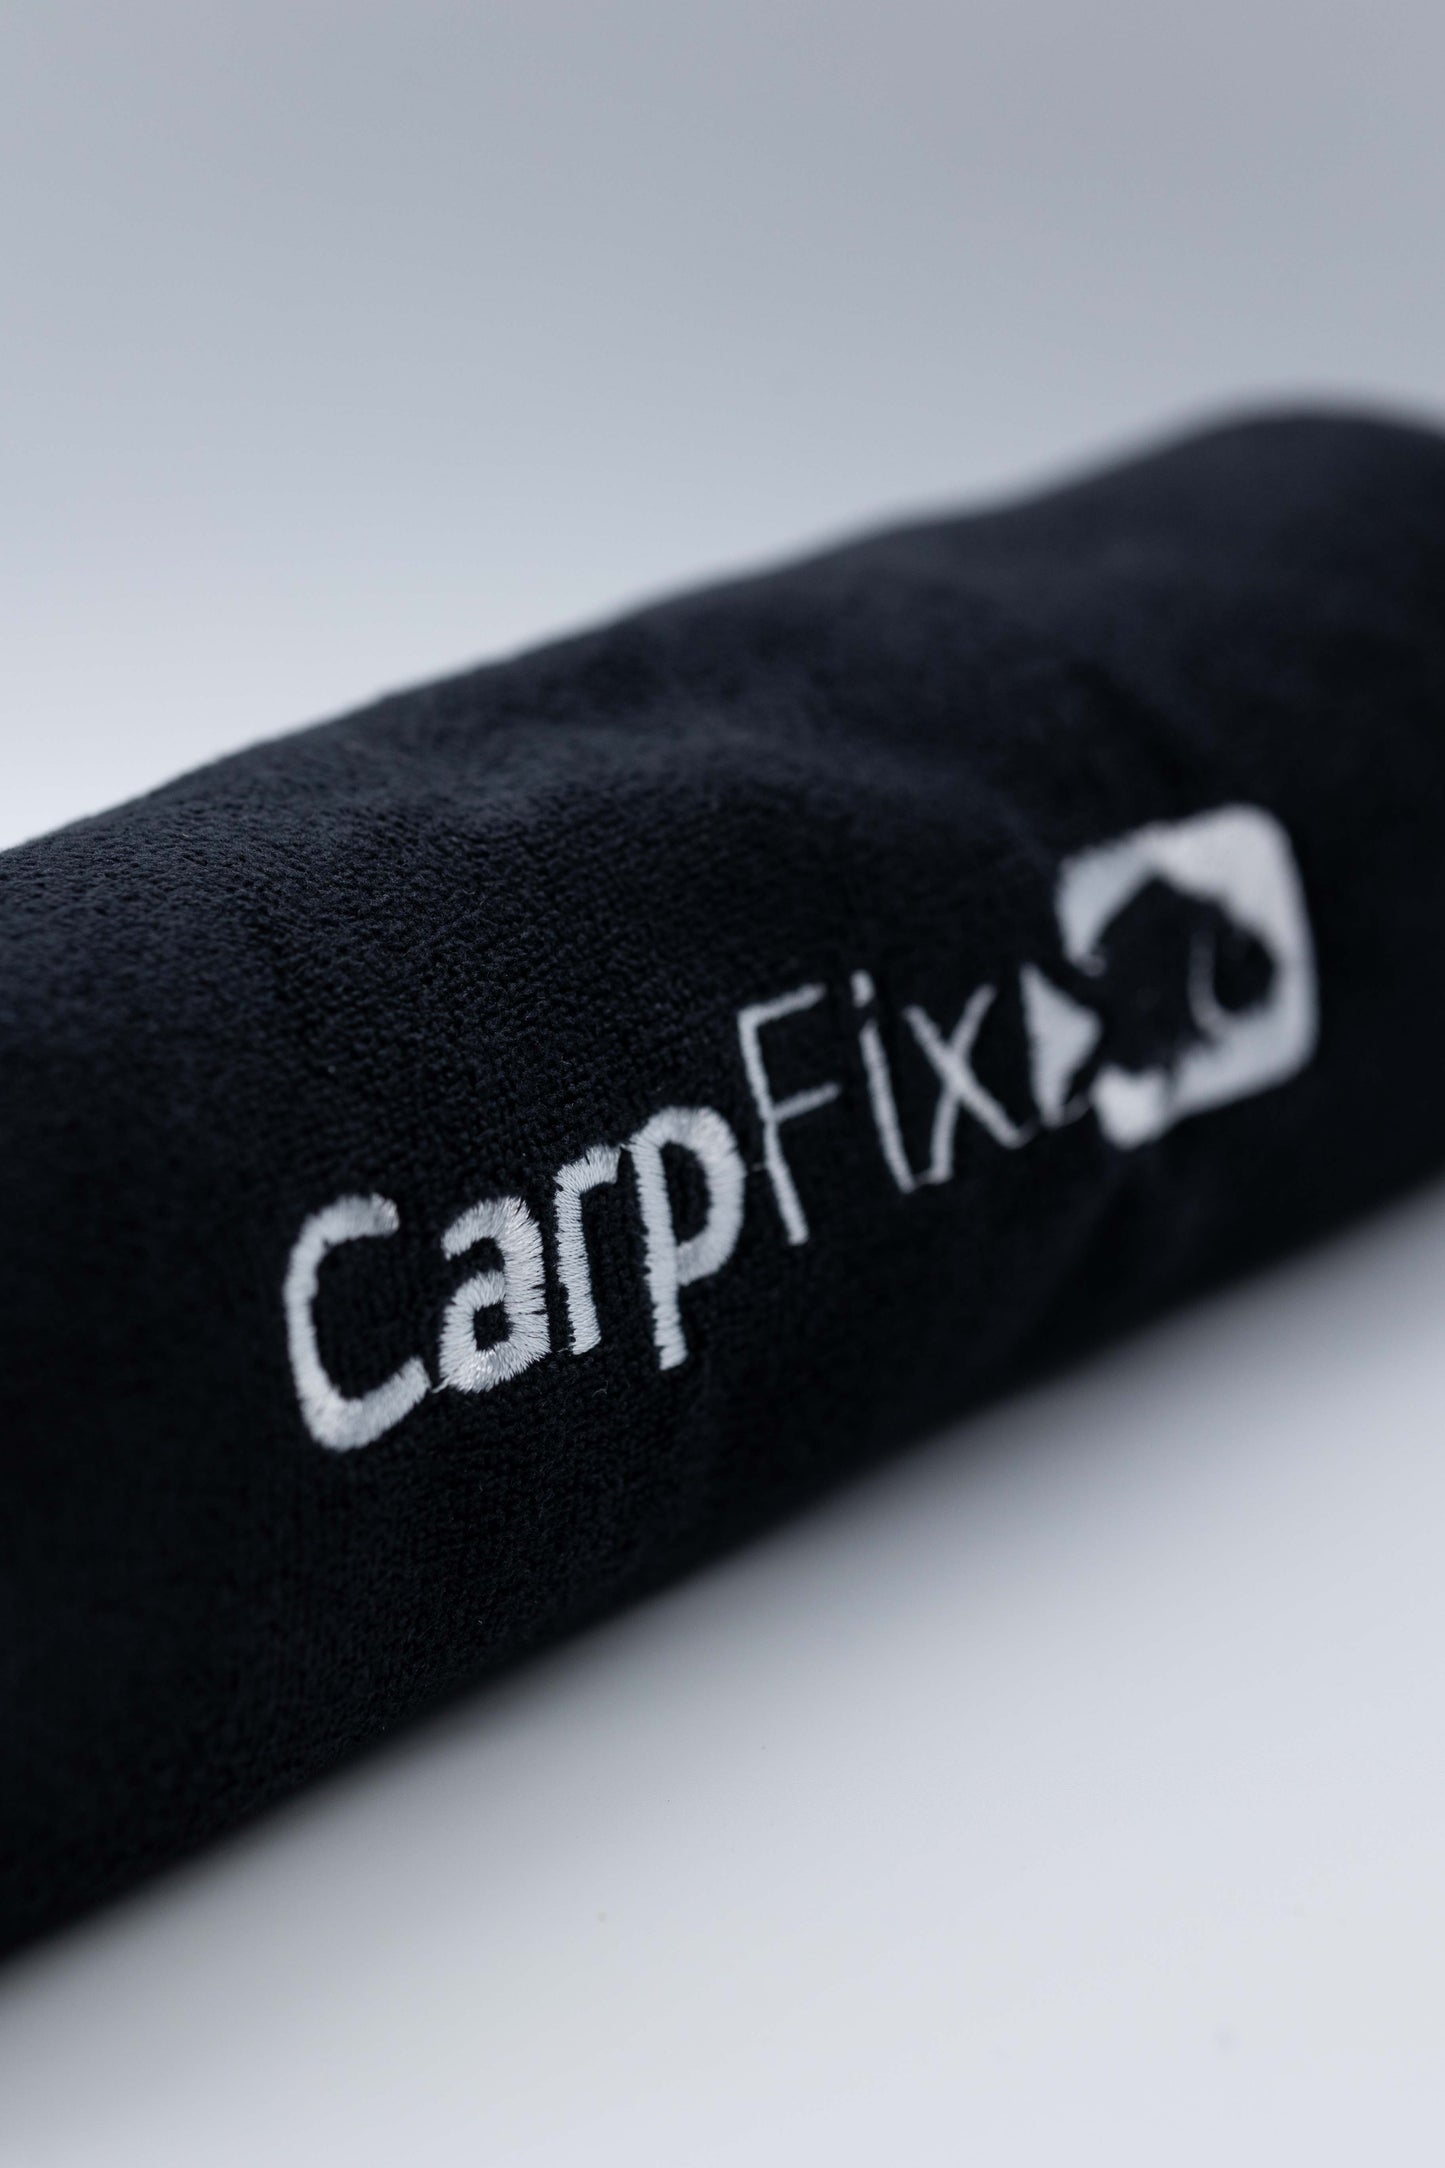 CarpFix Microfibre Towel